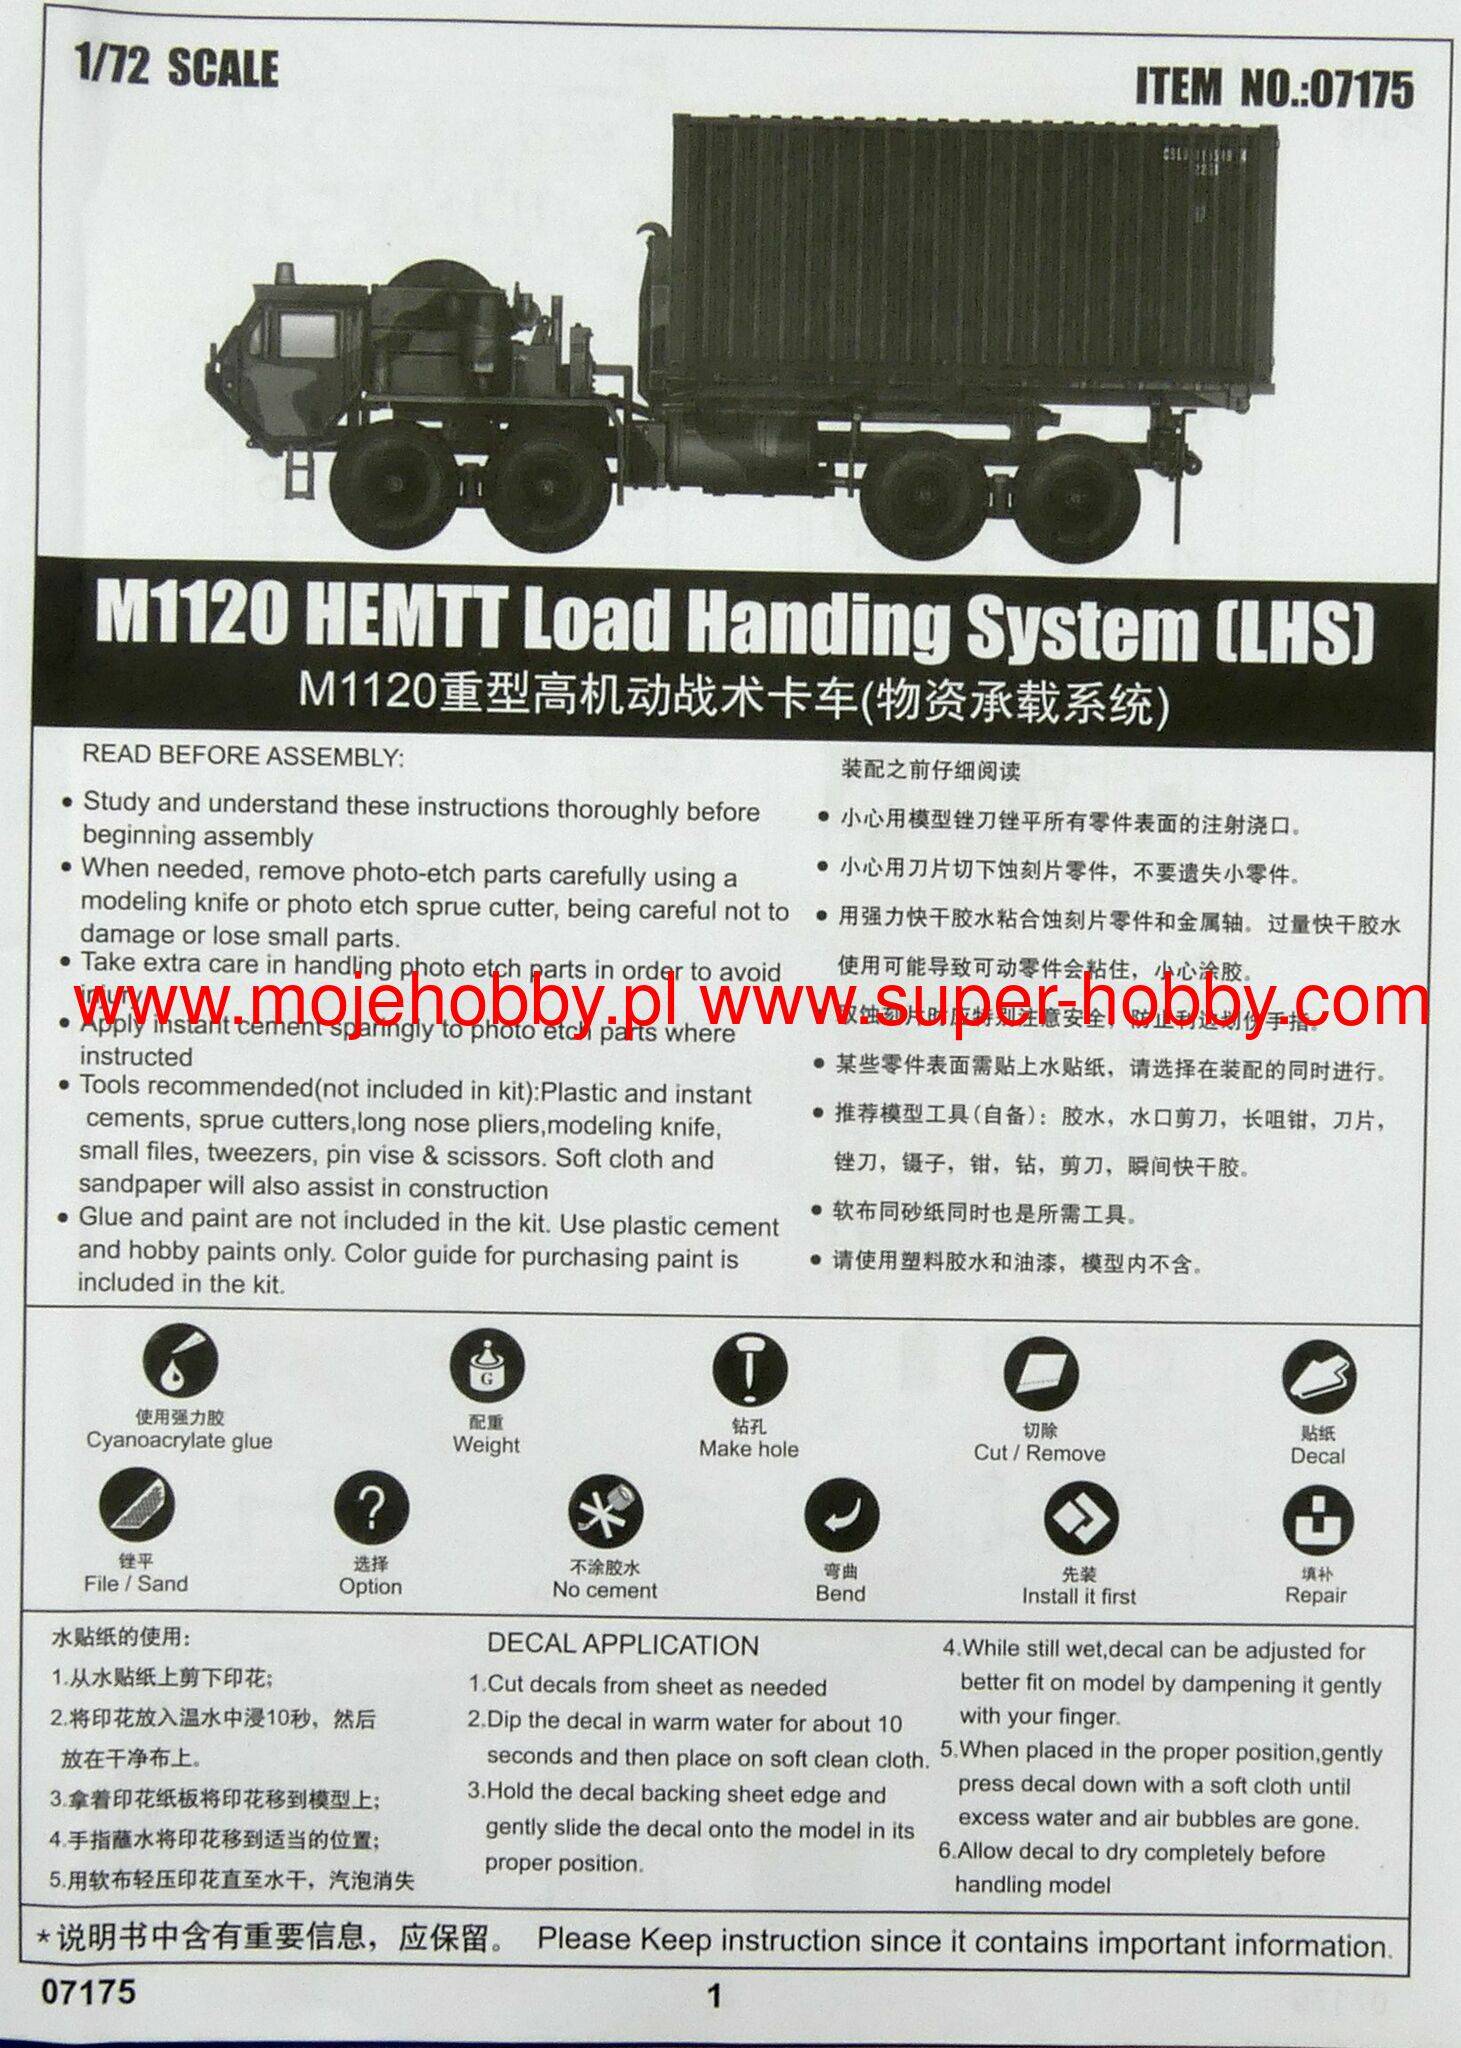 M1120 hemtt load handling system